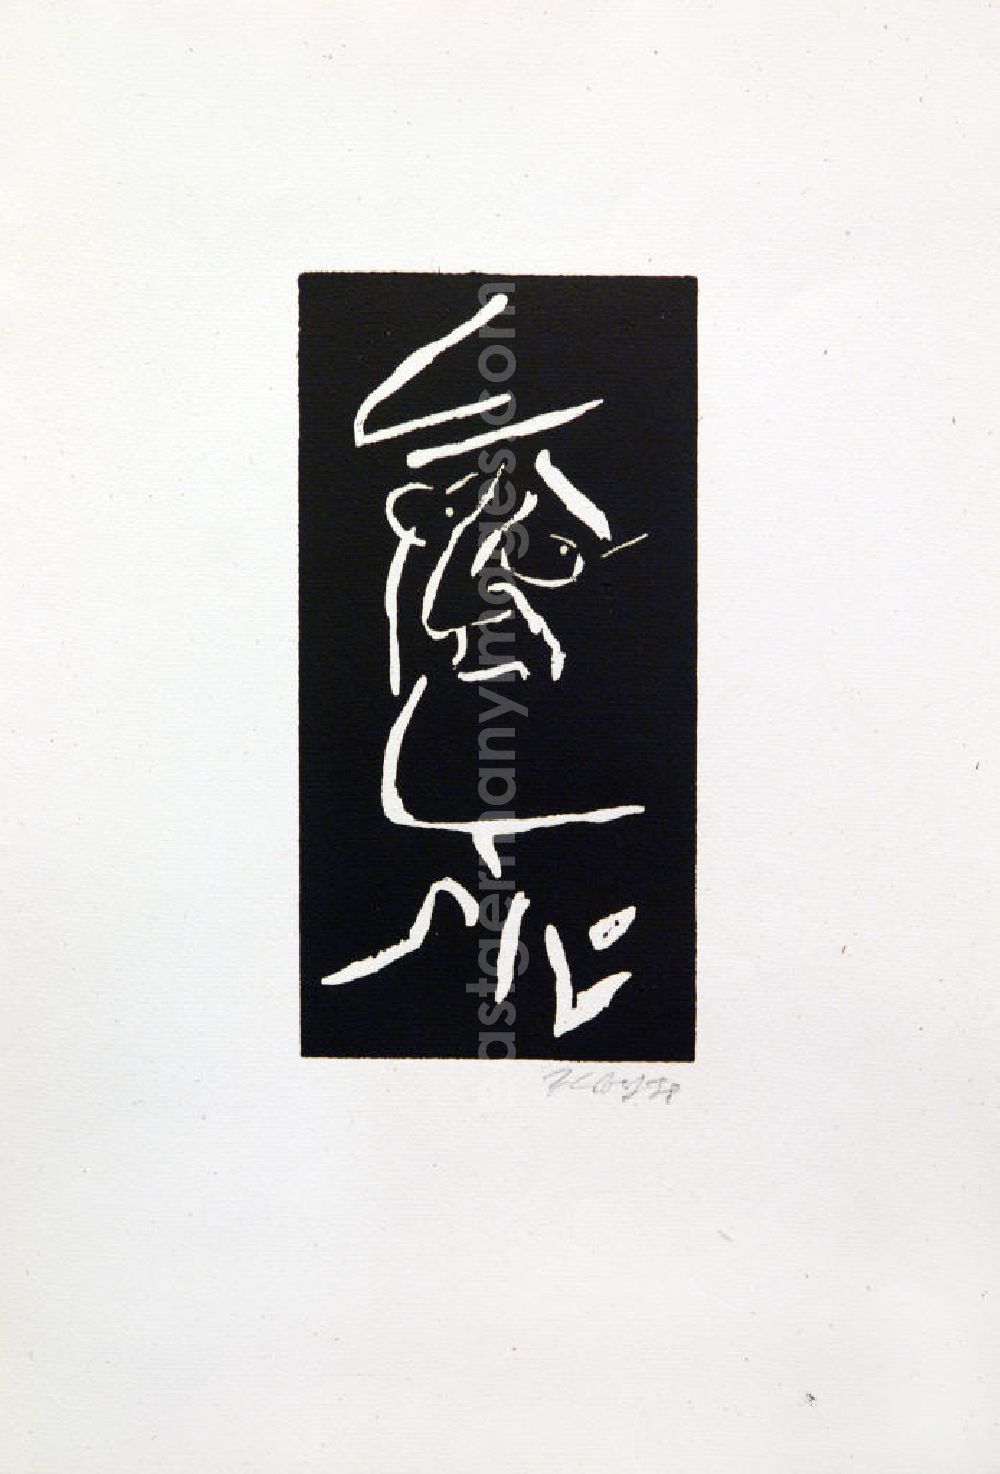 GDR image archive: Berlin - Grafik von Herbert Sandberg über Bertolt Brecht (*10.02.1898 †14.08.1956) aus dem Jahr 1978 als Erinnerung anlässlich seines 80. Geburtstages (Brecht mit Brille, Gesicht nah von links) Holzschnitt auf handgeschöpftem Bütten 20,5 x1